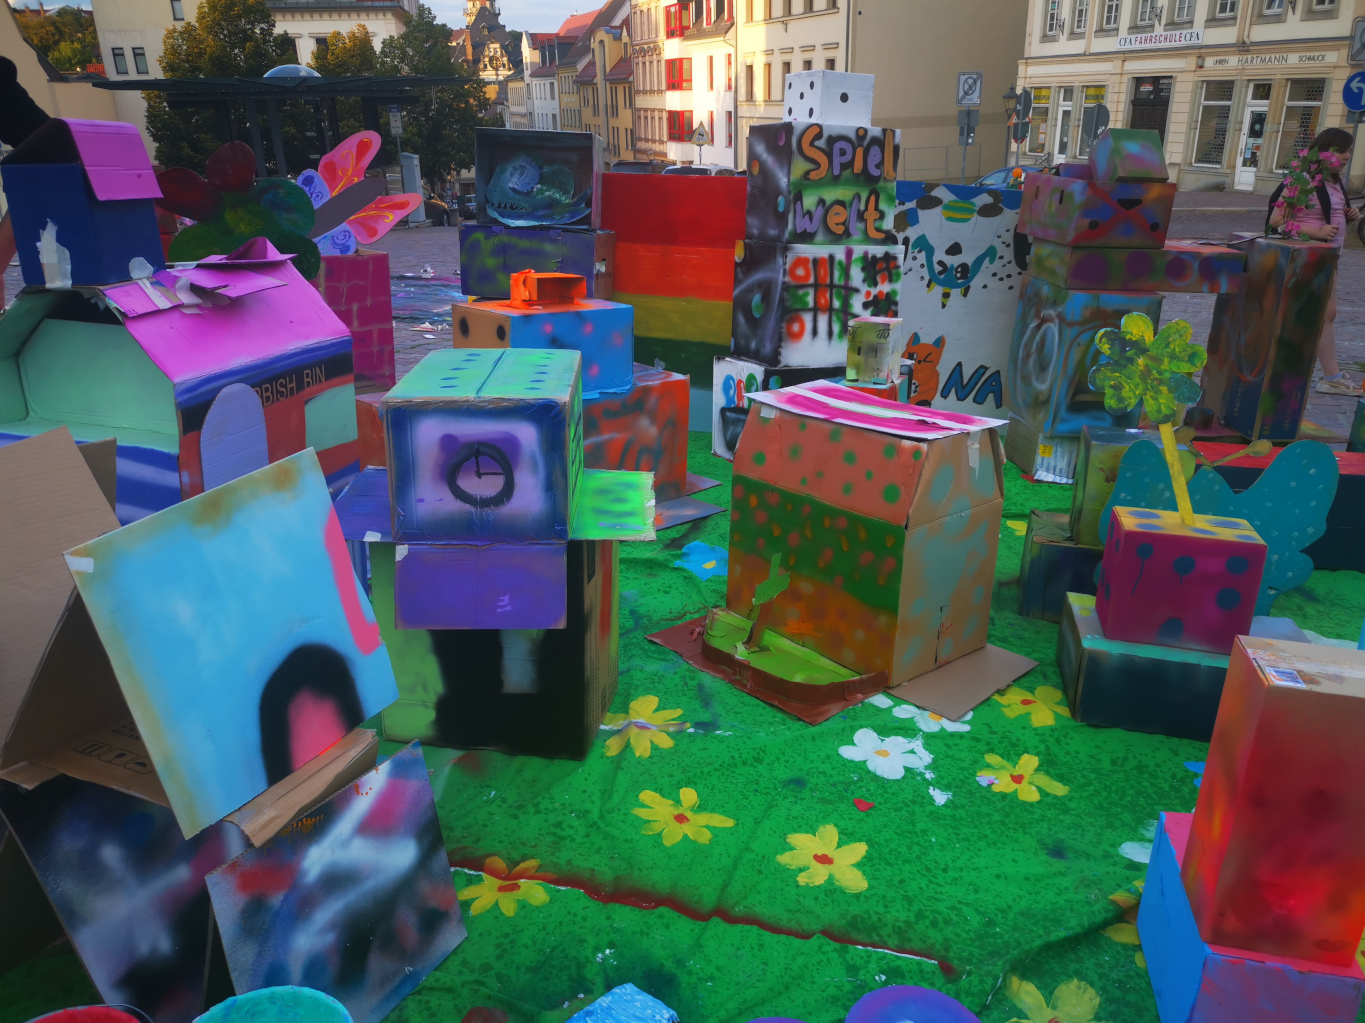 Erstellen einer Kistenstadt anläßlich des Stadtmensch-Festivals zusammen mit der Farbküche Altenburg.